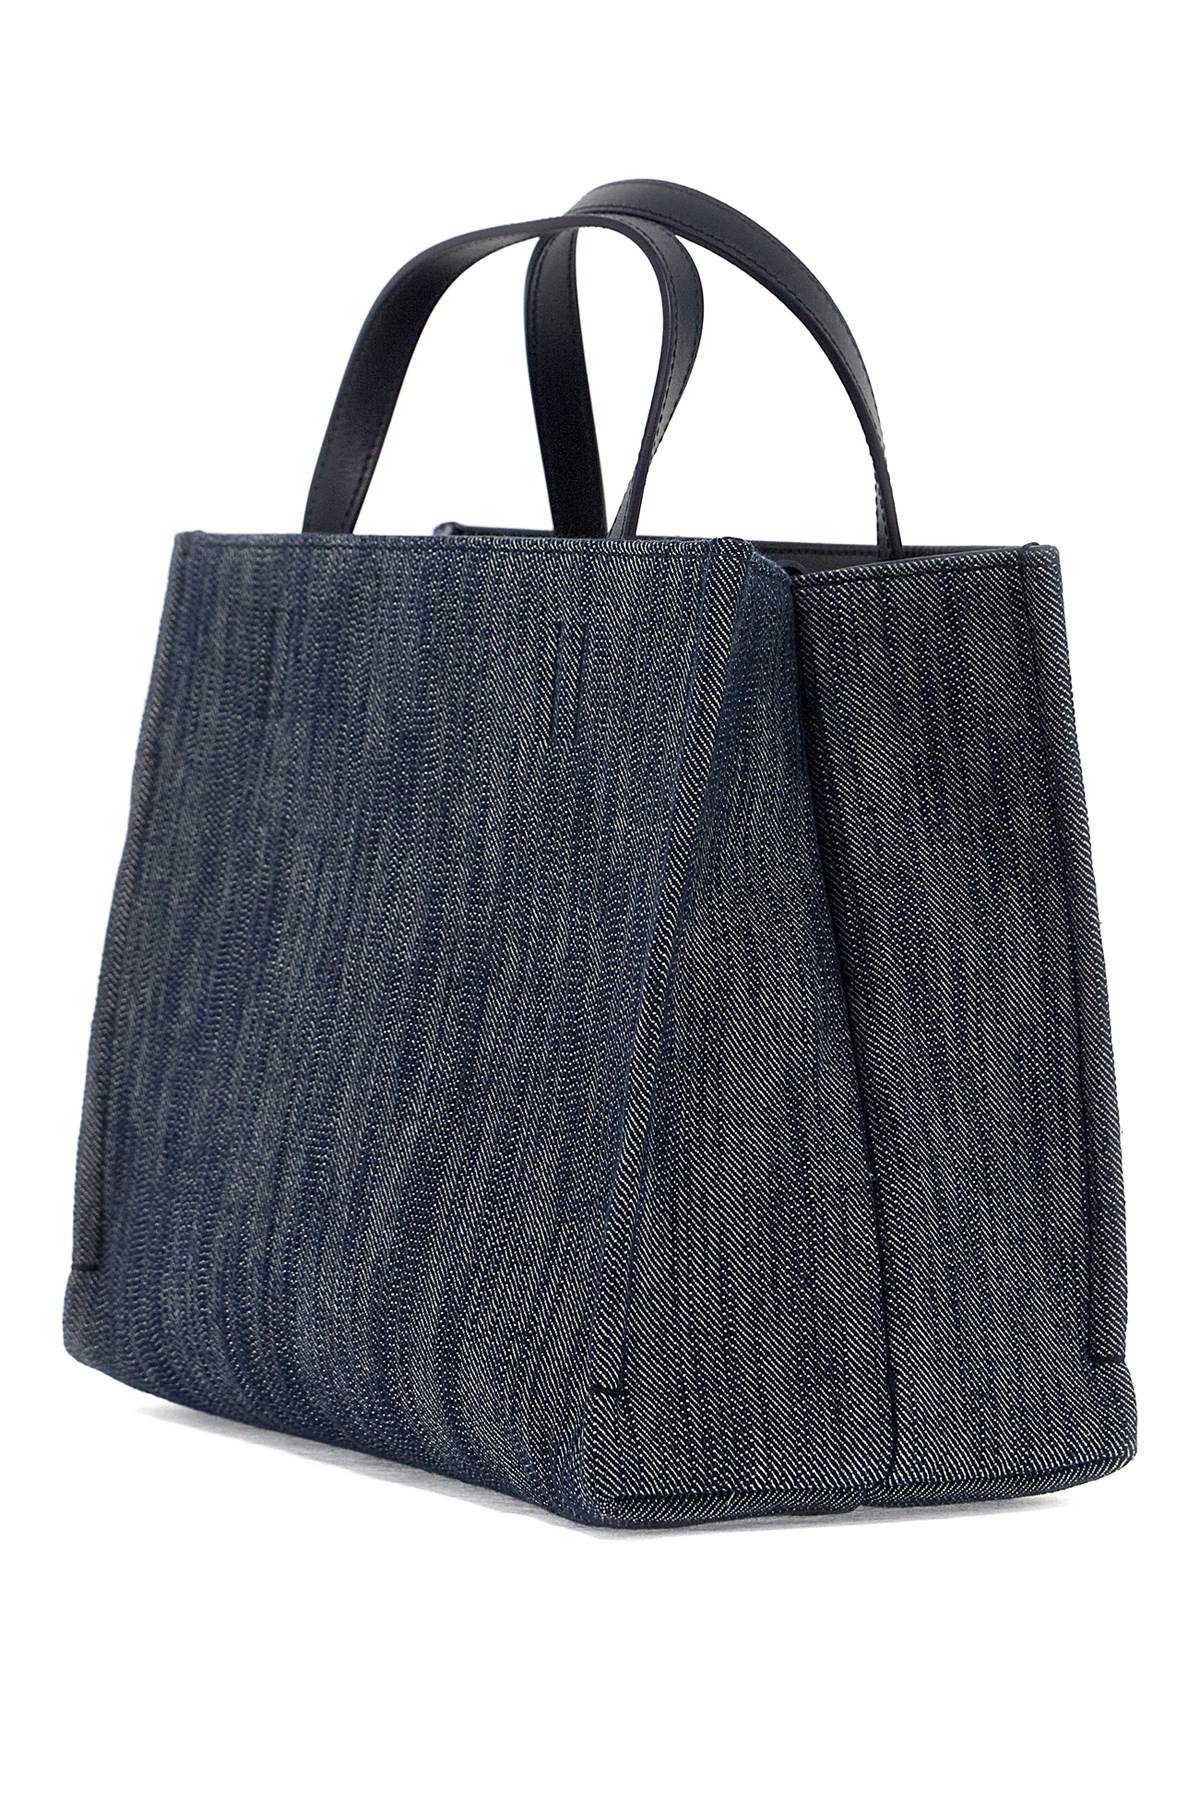 حقيبة يد صغيرة من الجينز بتصميم قديم مع تفاصيل جلدية وحزام قابل للتعديل